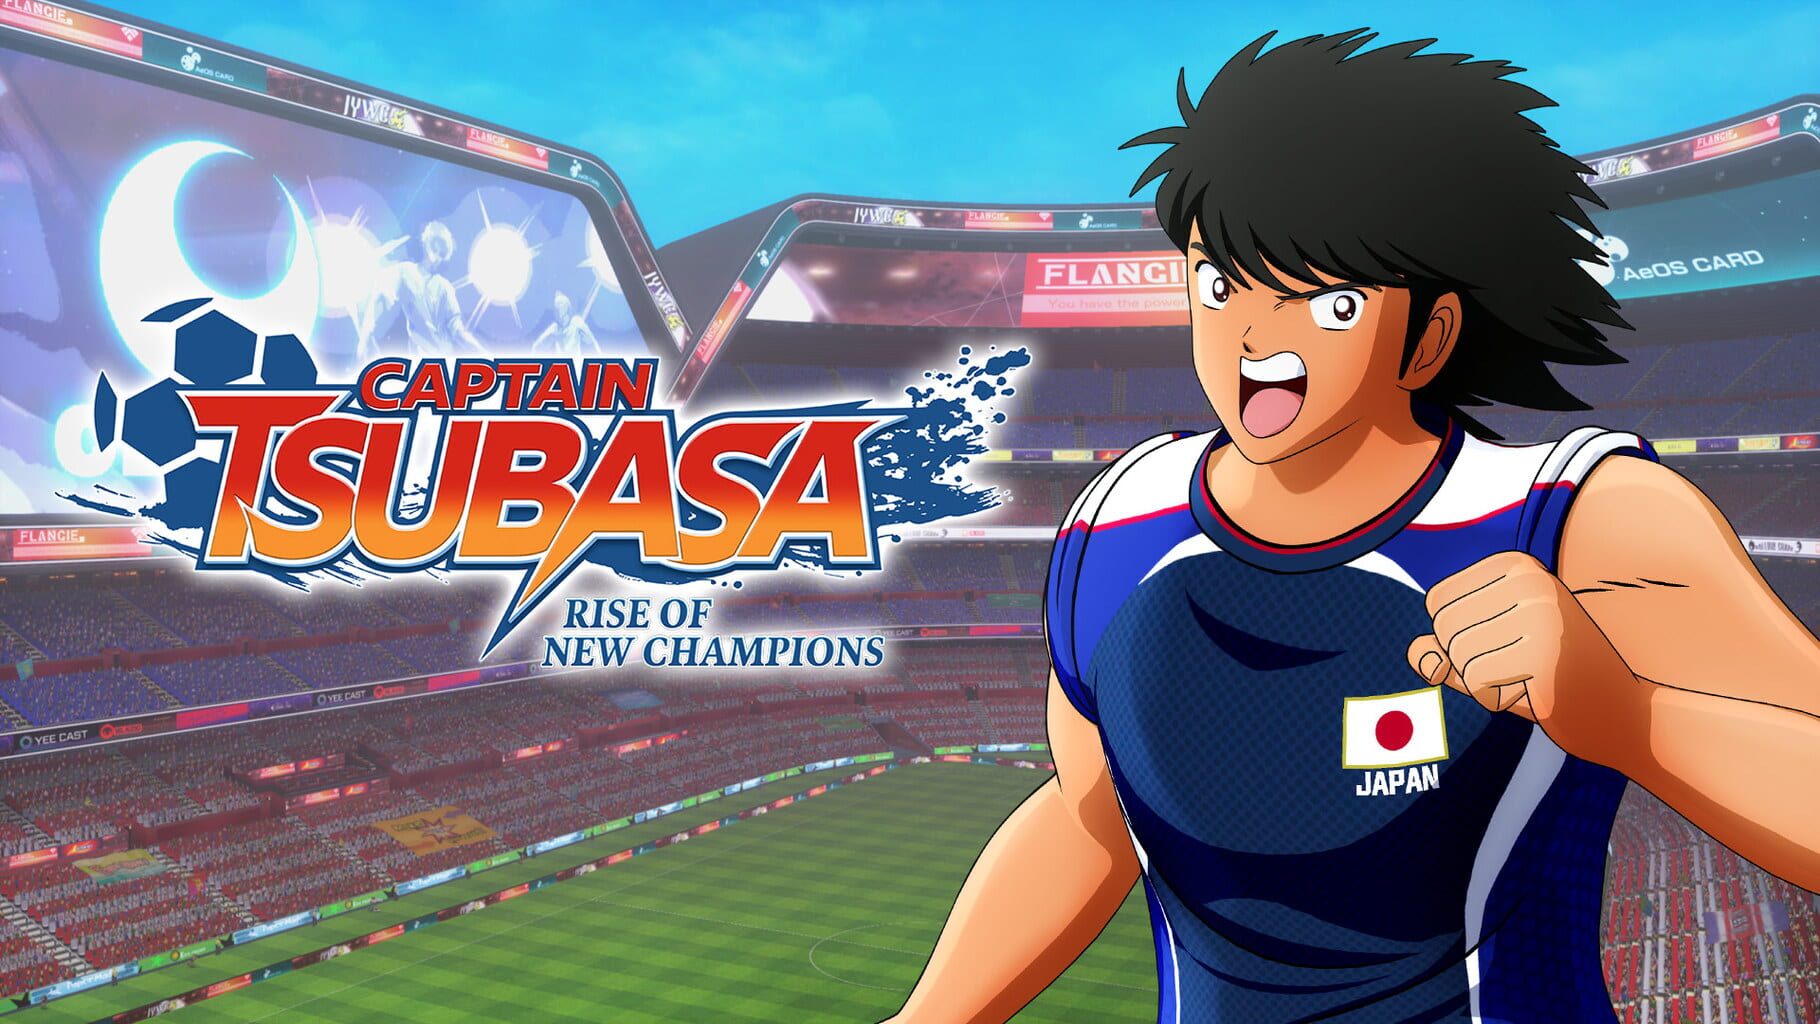 Captain Tsubasa: Rise of New Champions - Kojiro Hyuga artwork